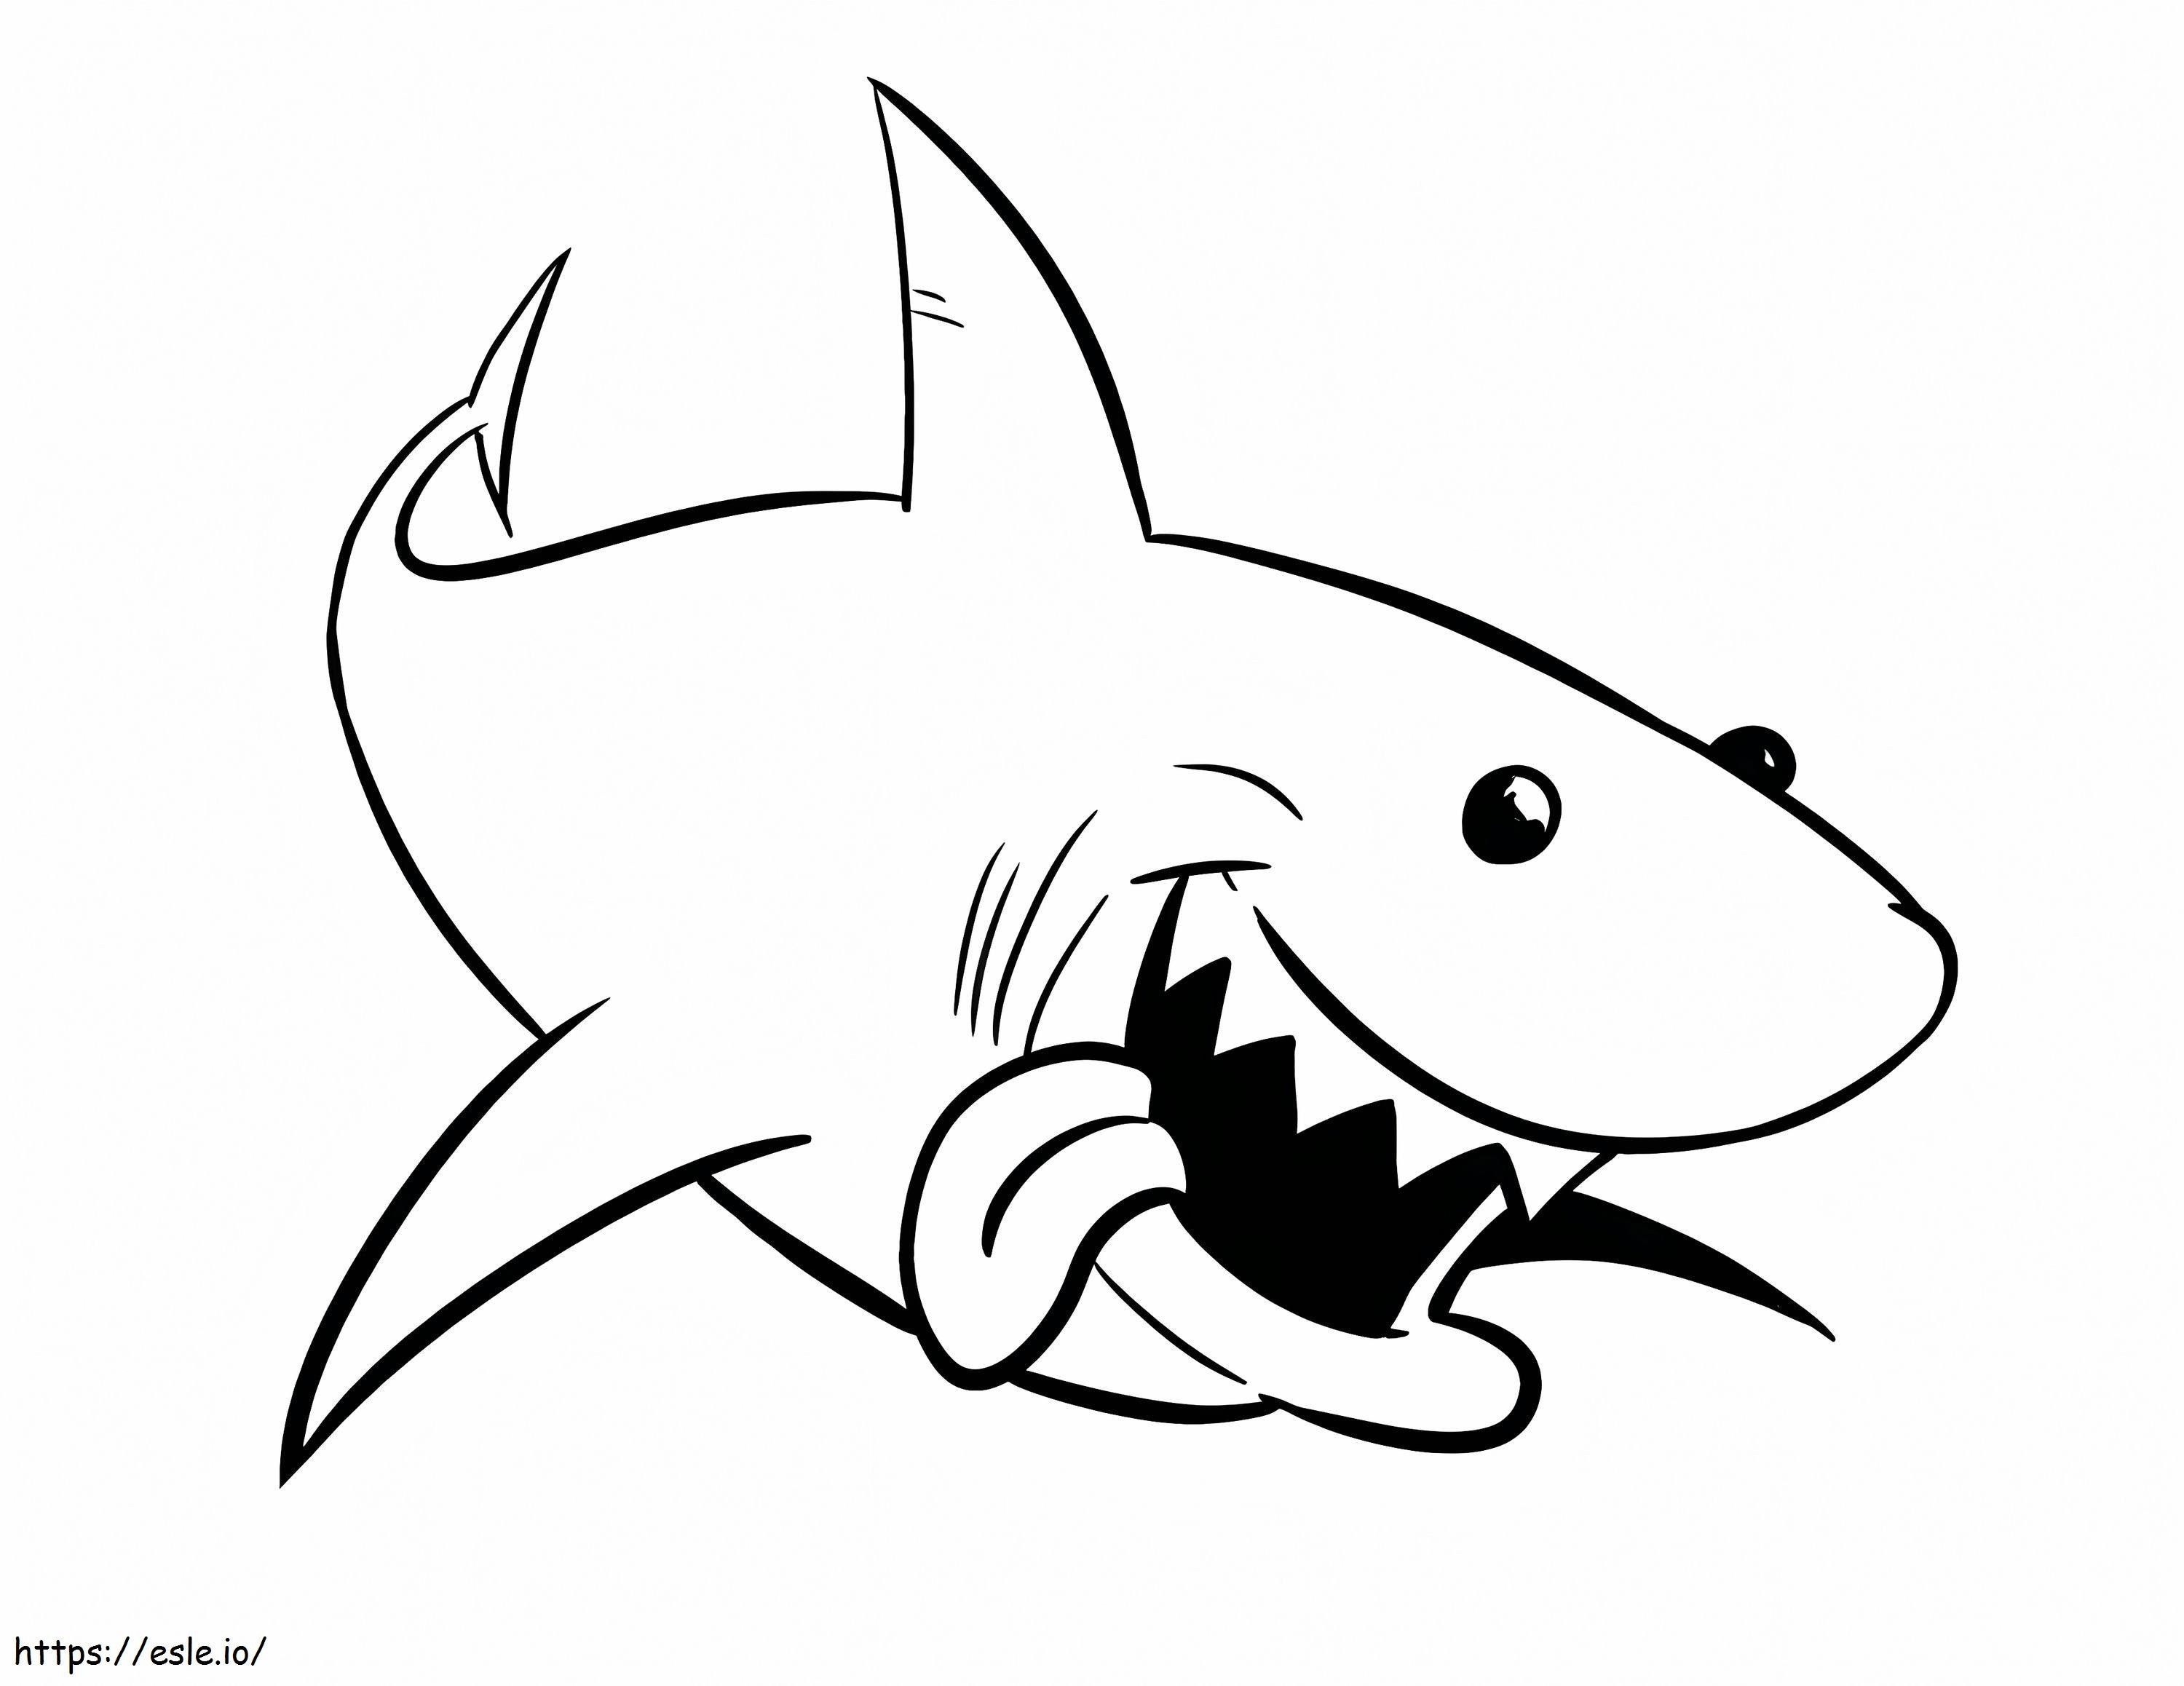 1541378982 Kompletny D792570 Bull Shark Wielki biały rekin Nowy Bull Shark Rysunek wielkiego białego rekina Kolorowanie Antyczne rekiny bycze Kolorowanki kolorowanka